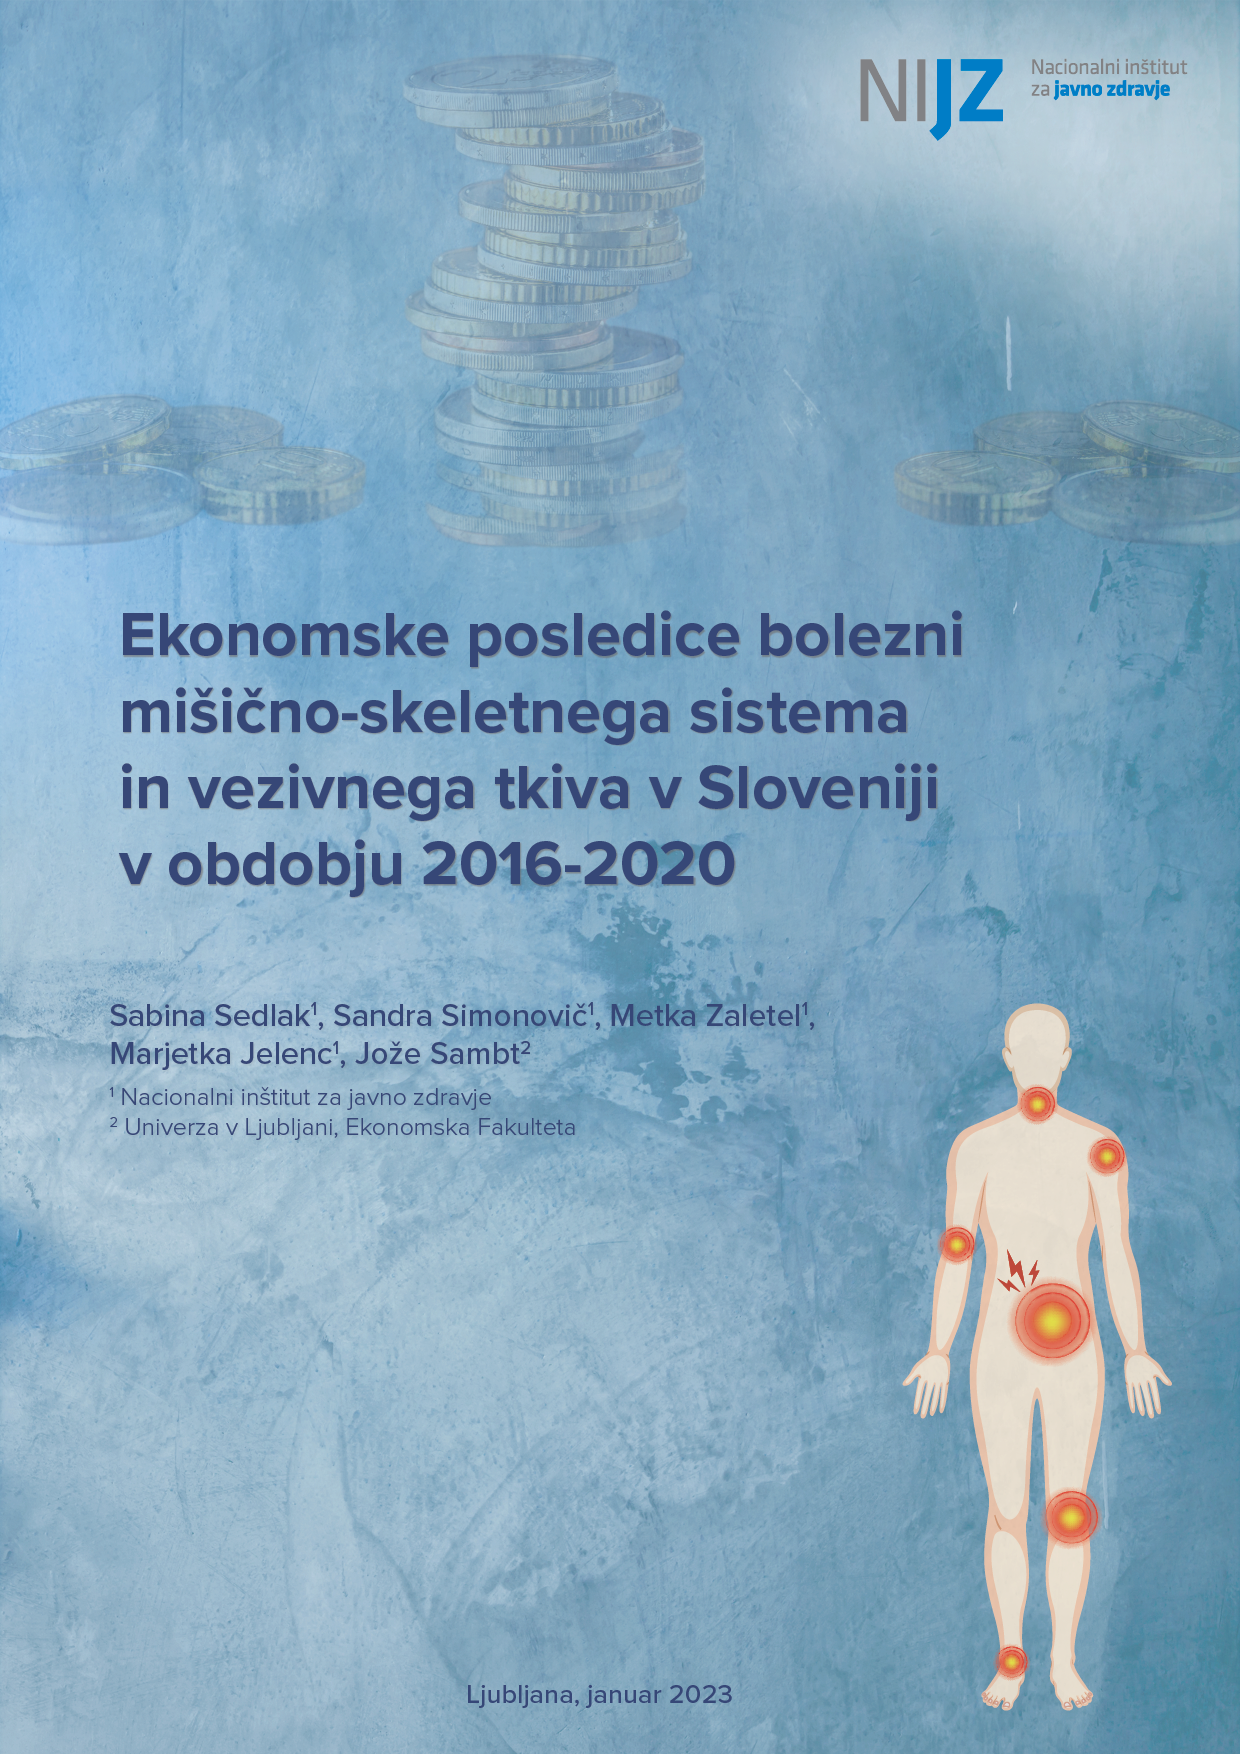 Ekonomske posledice bolezni mišično-skeletnega sistema in vezivnega tkiva v Sloveniji v obdobju 2016-2020